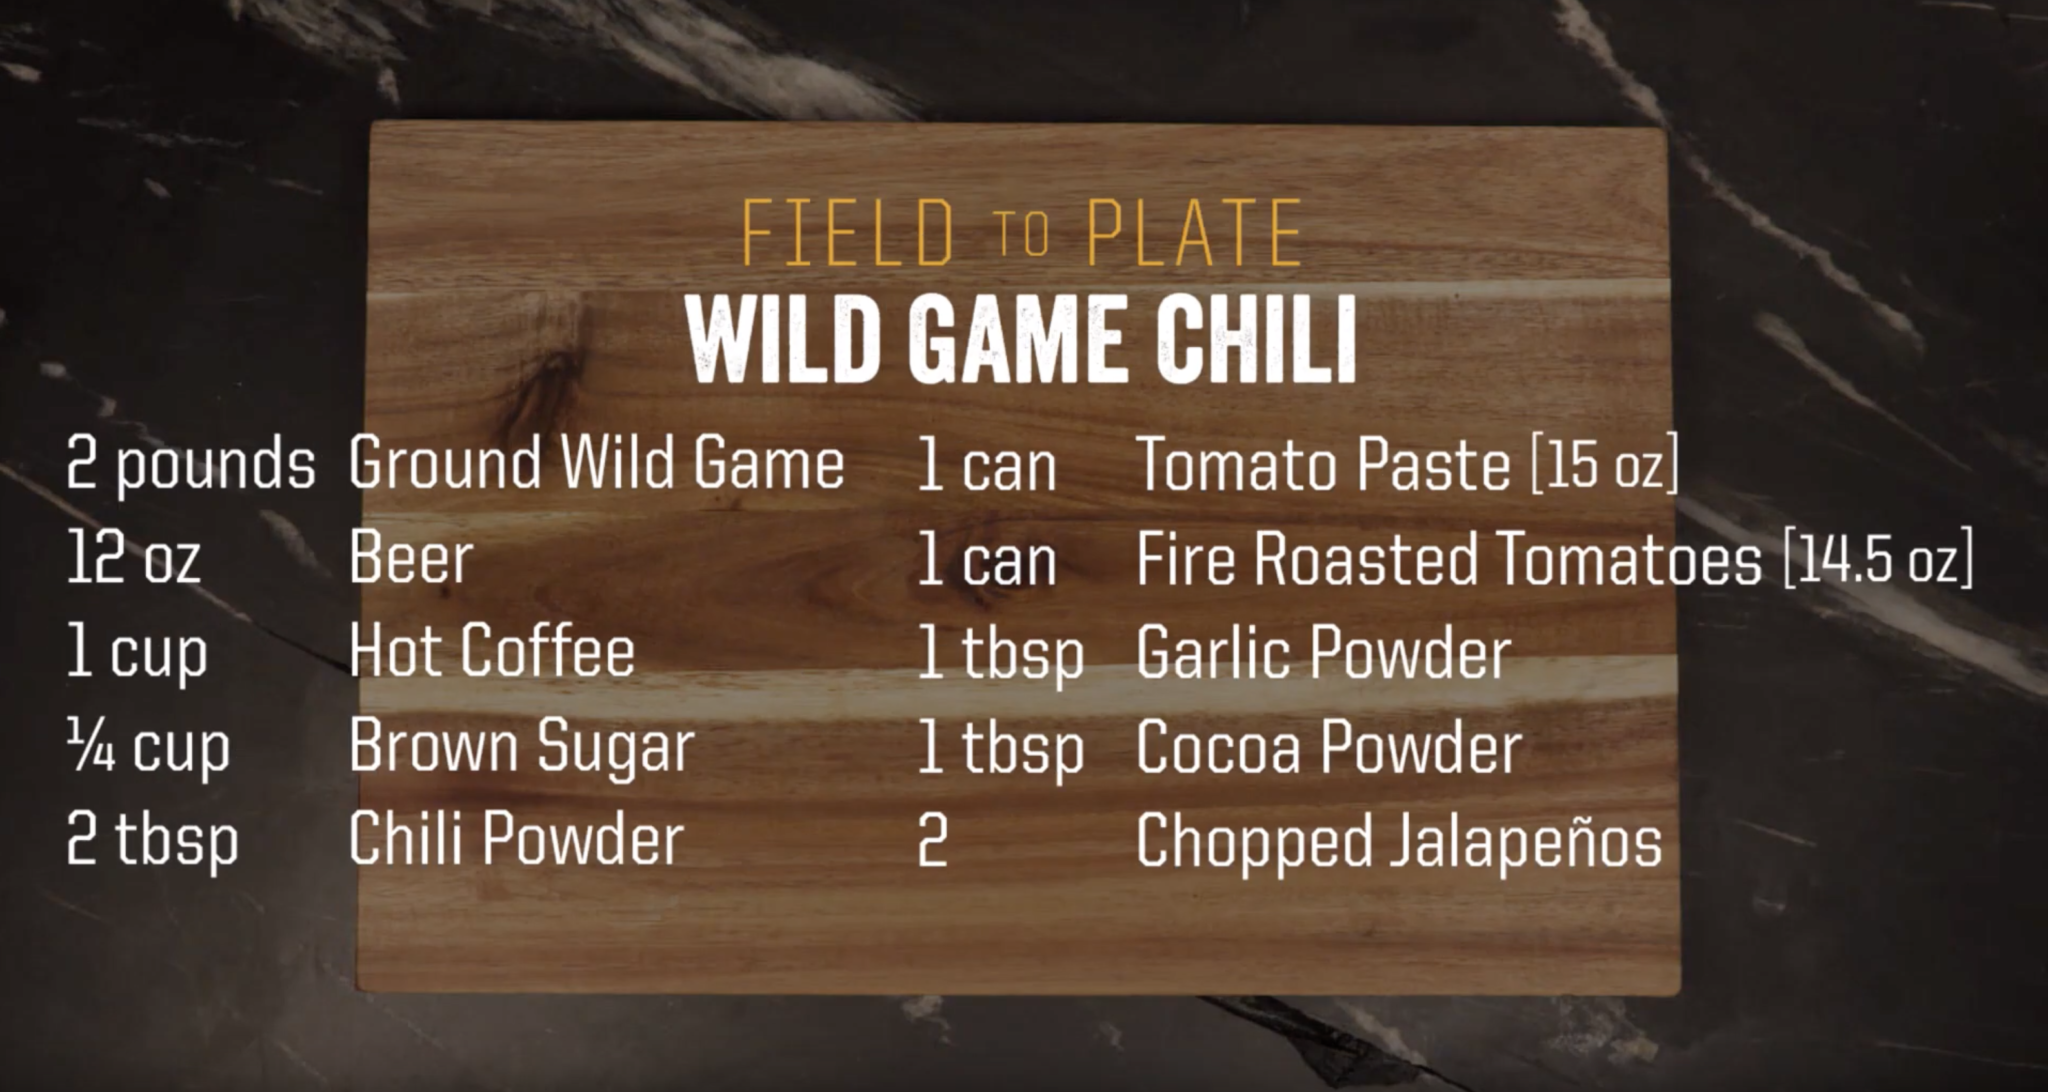 Wild game chili